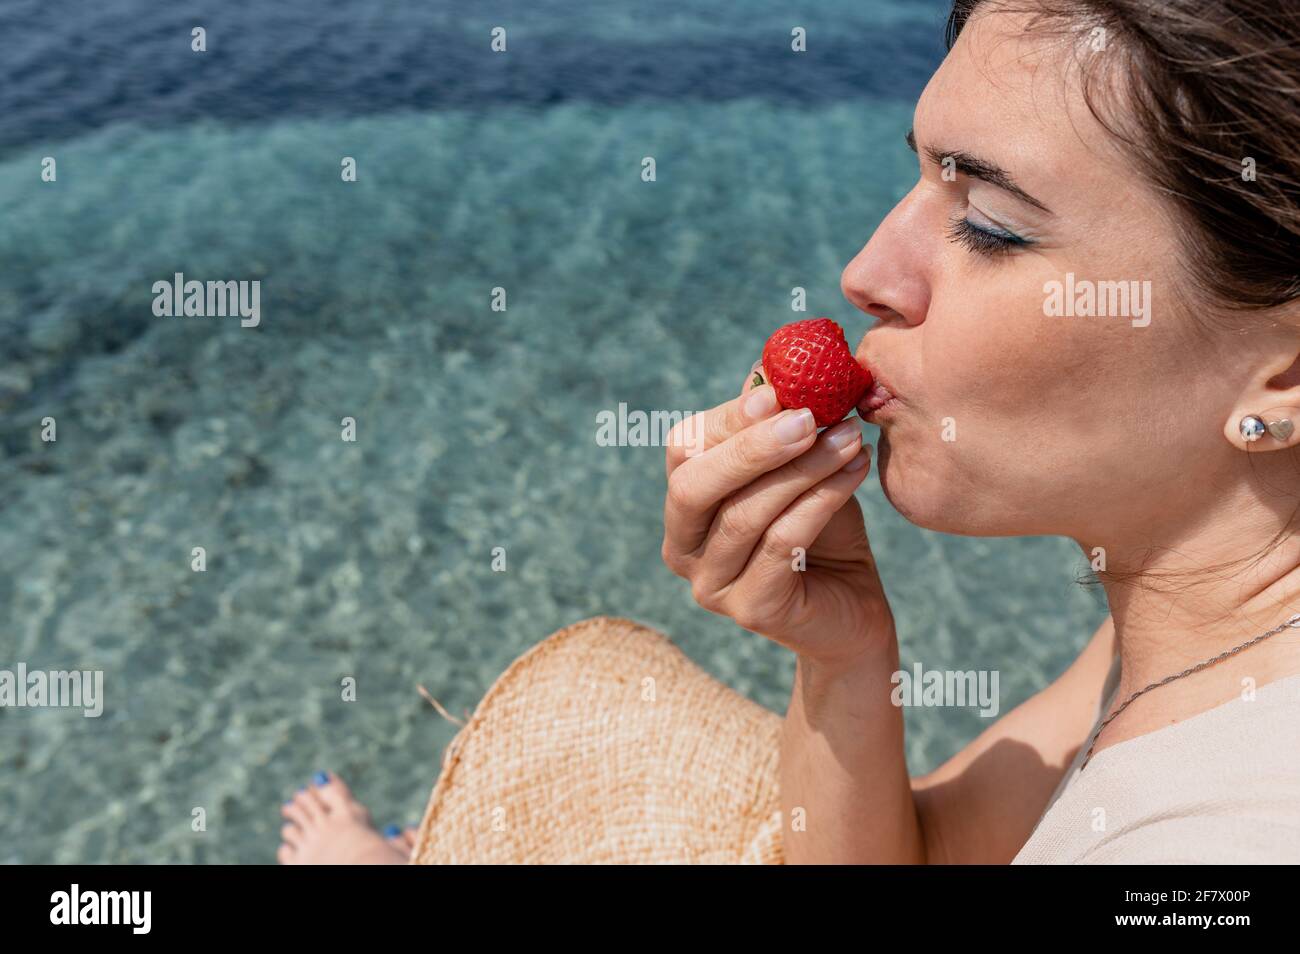 Gros plan jeune femme caucasienne mordant une fraise avec des yeux proches. Magnifique eau de mer translucide sur fond. Banque D'Images